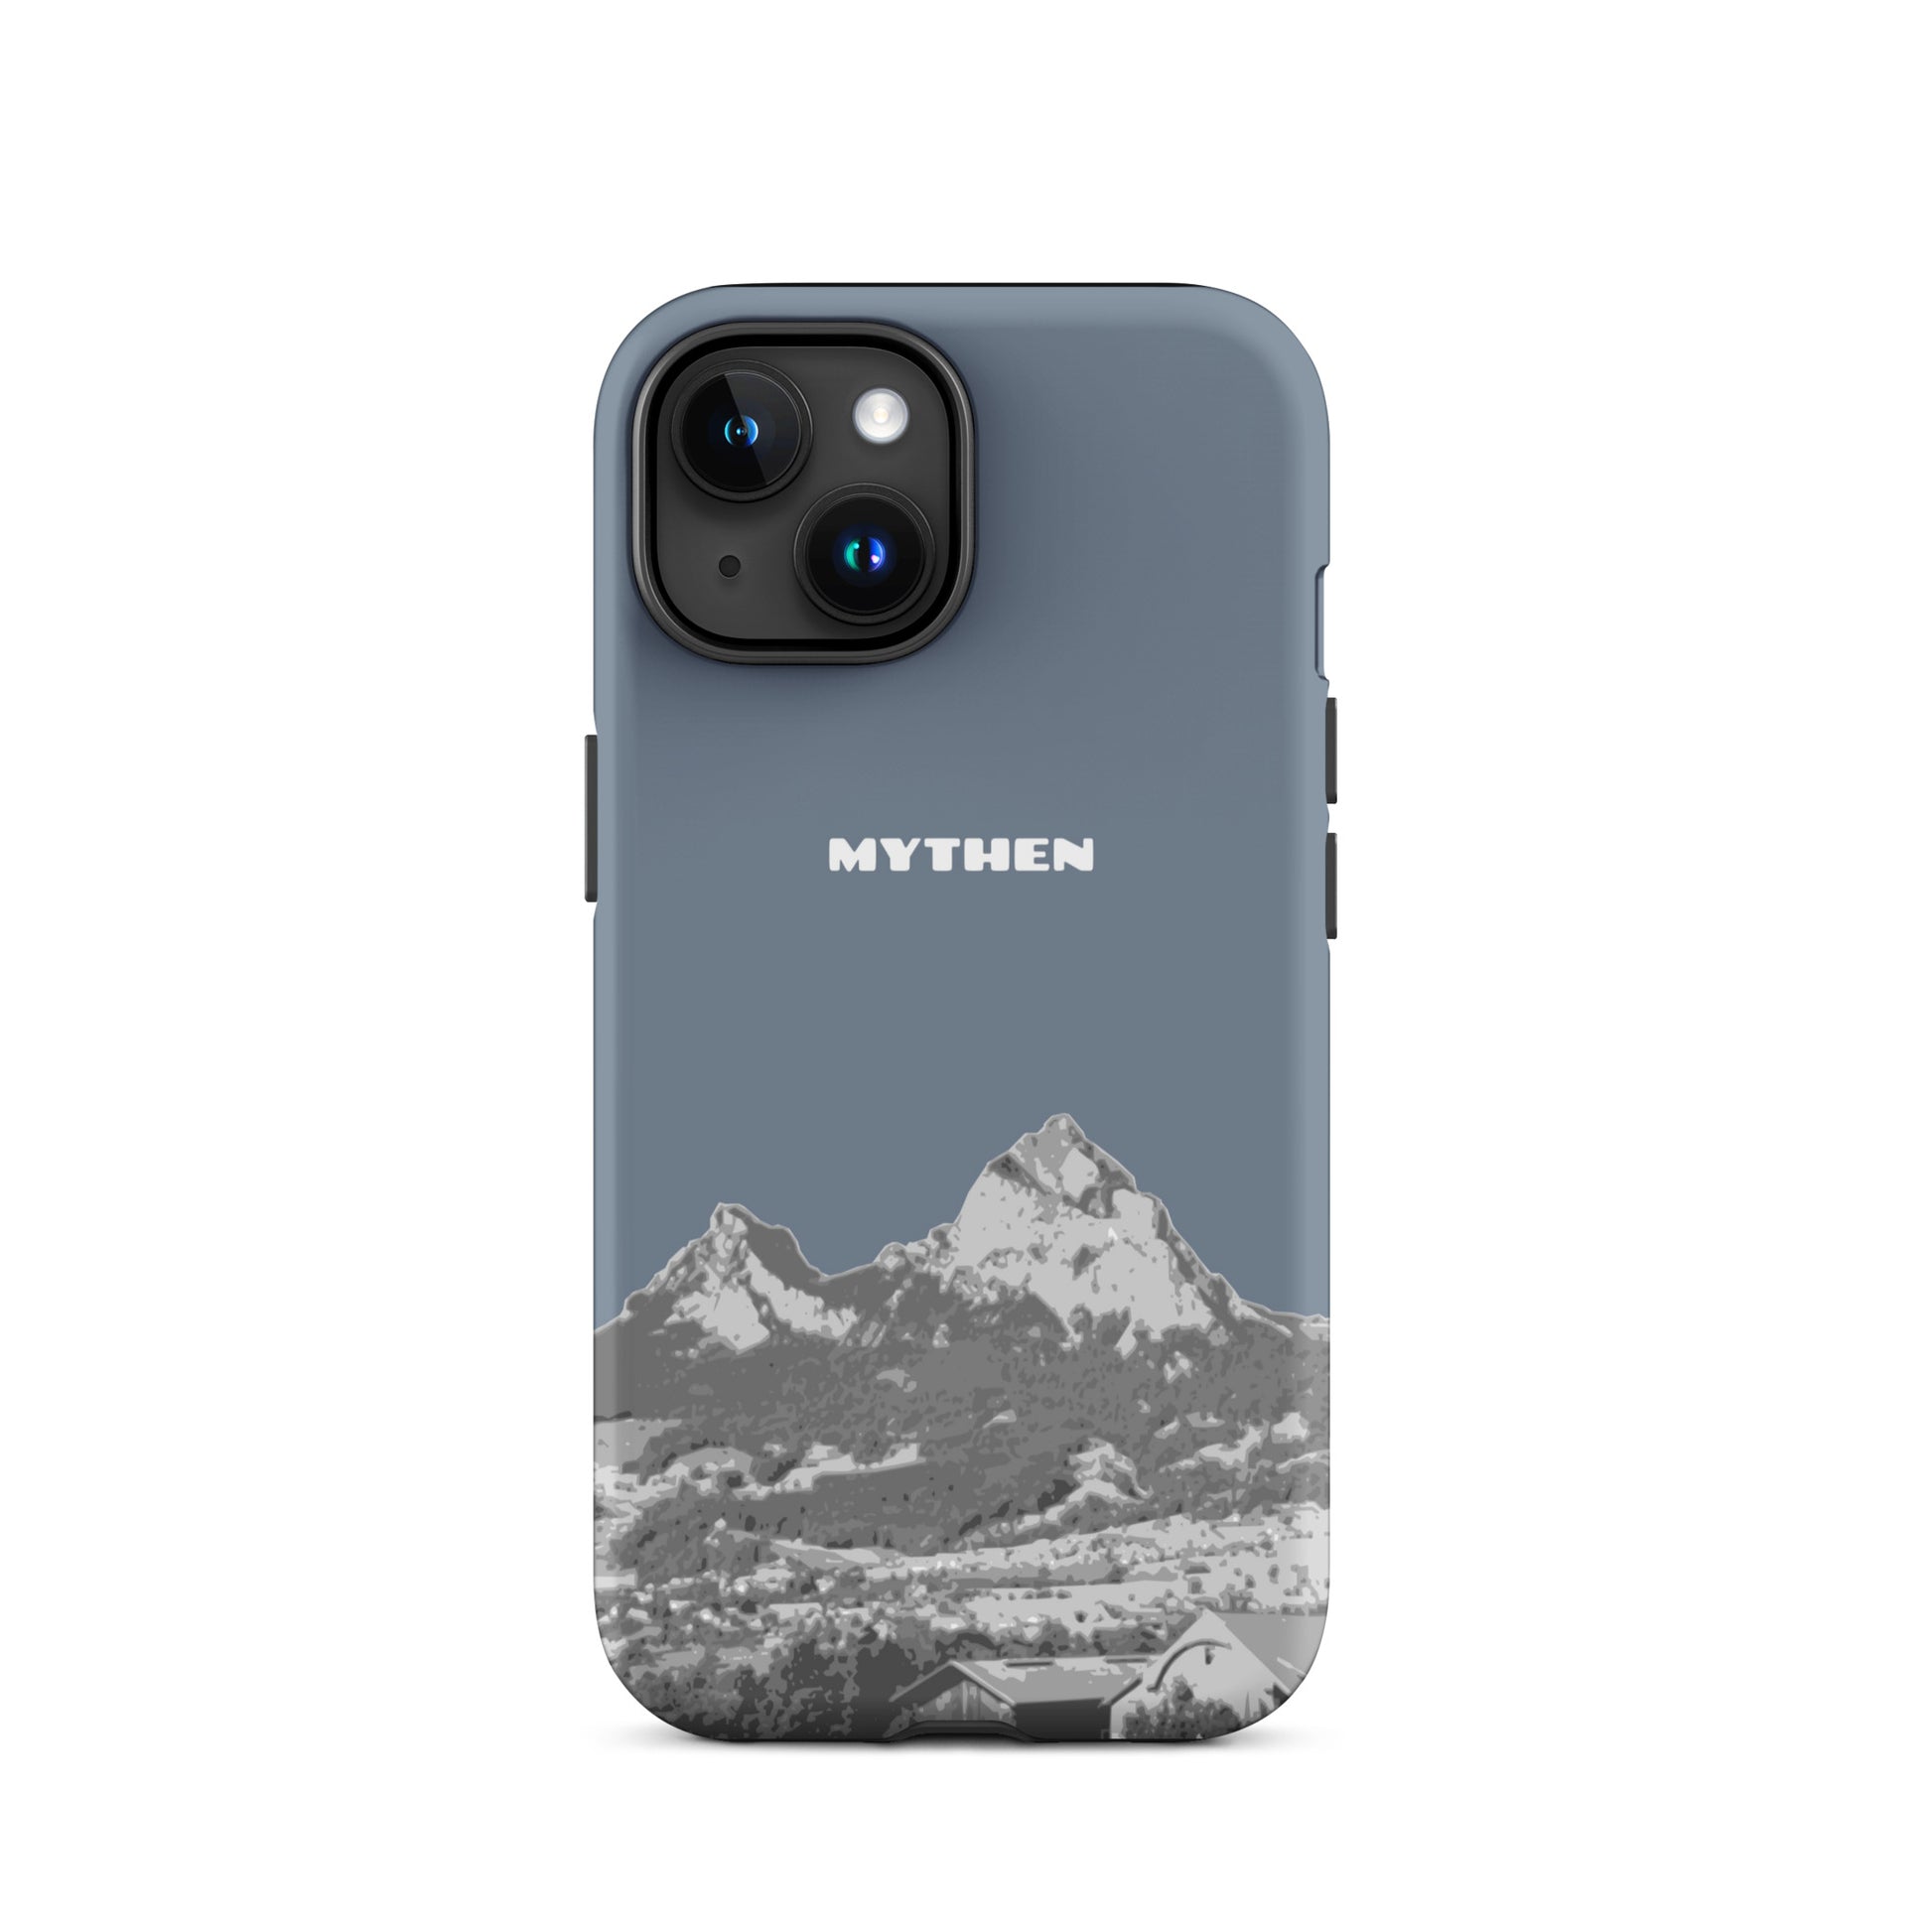 Hülle für das iPhone 15 von Apple in der Farbe Schiefergrau, die den Grossen Mythen und den Kleinen Mythen bei Schwyz zeigt. 